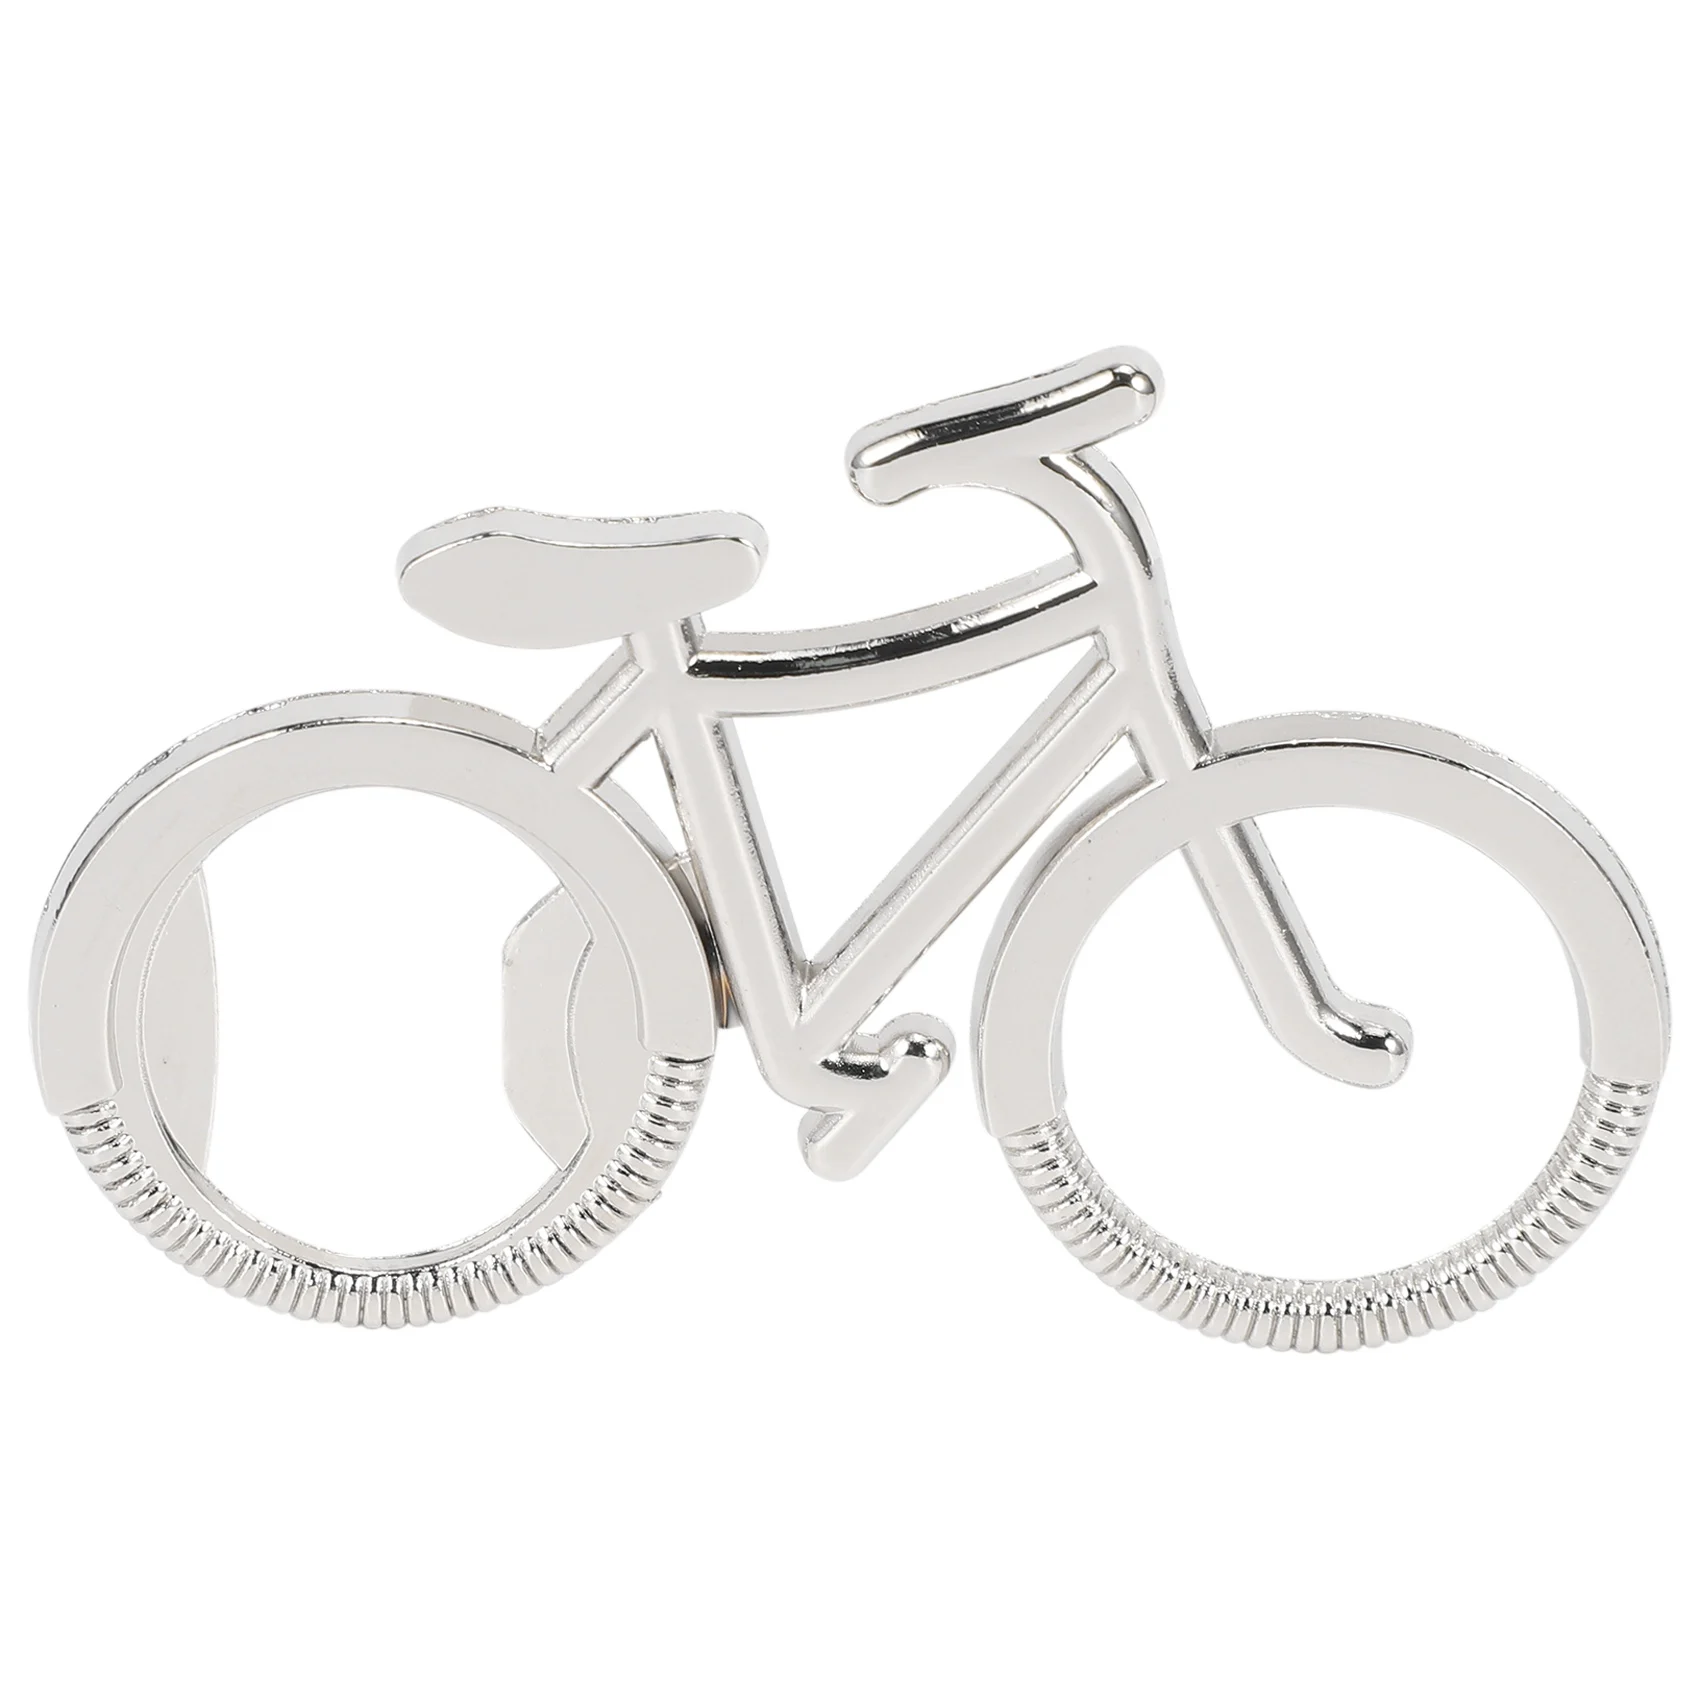 20 шт./лот металлическая открывалка для пивных бутылок симпатичный велосипед велосипед брелок брелок для ключей для открывалок для бутылок креативный подарок для езды на велосипеде